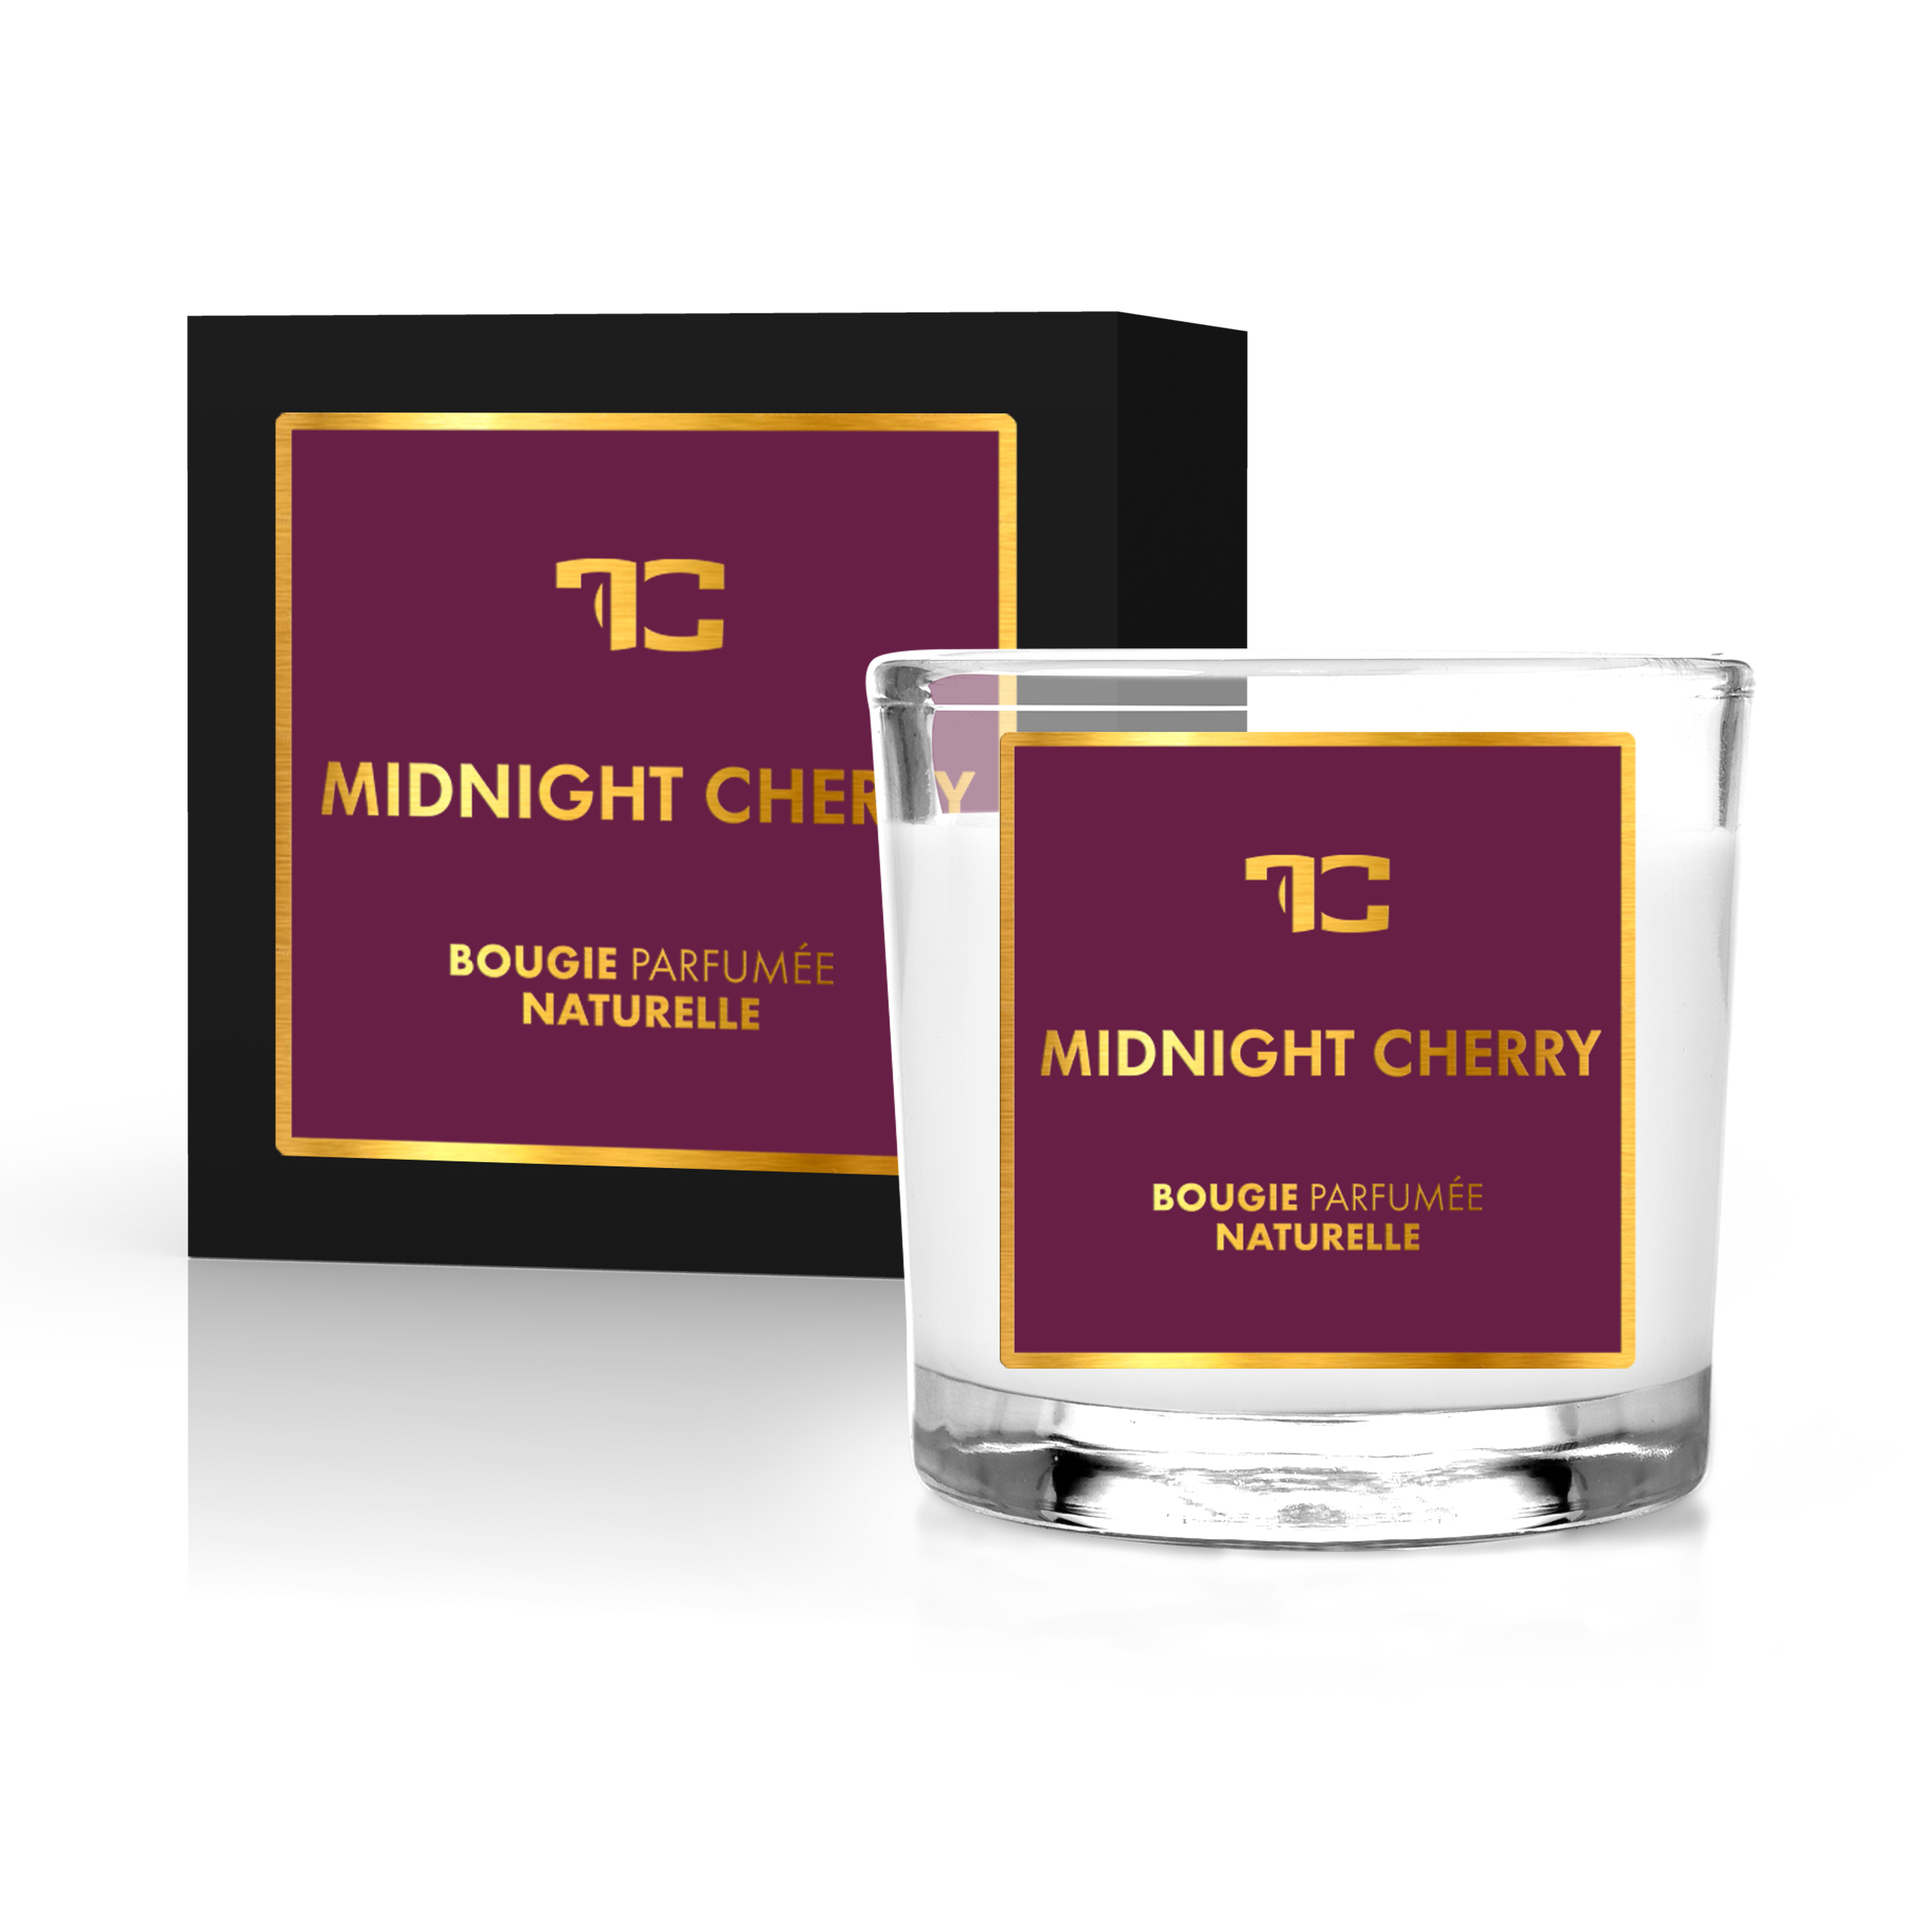 55 ml votivní sójová eko-svíce, Midnight cherry, Parfumia